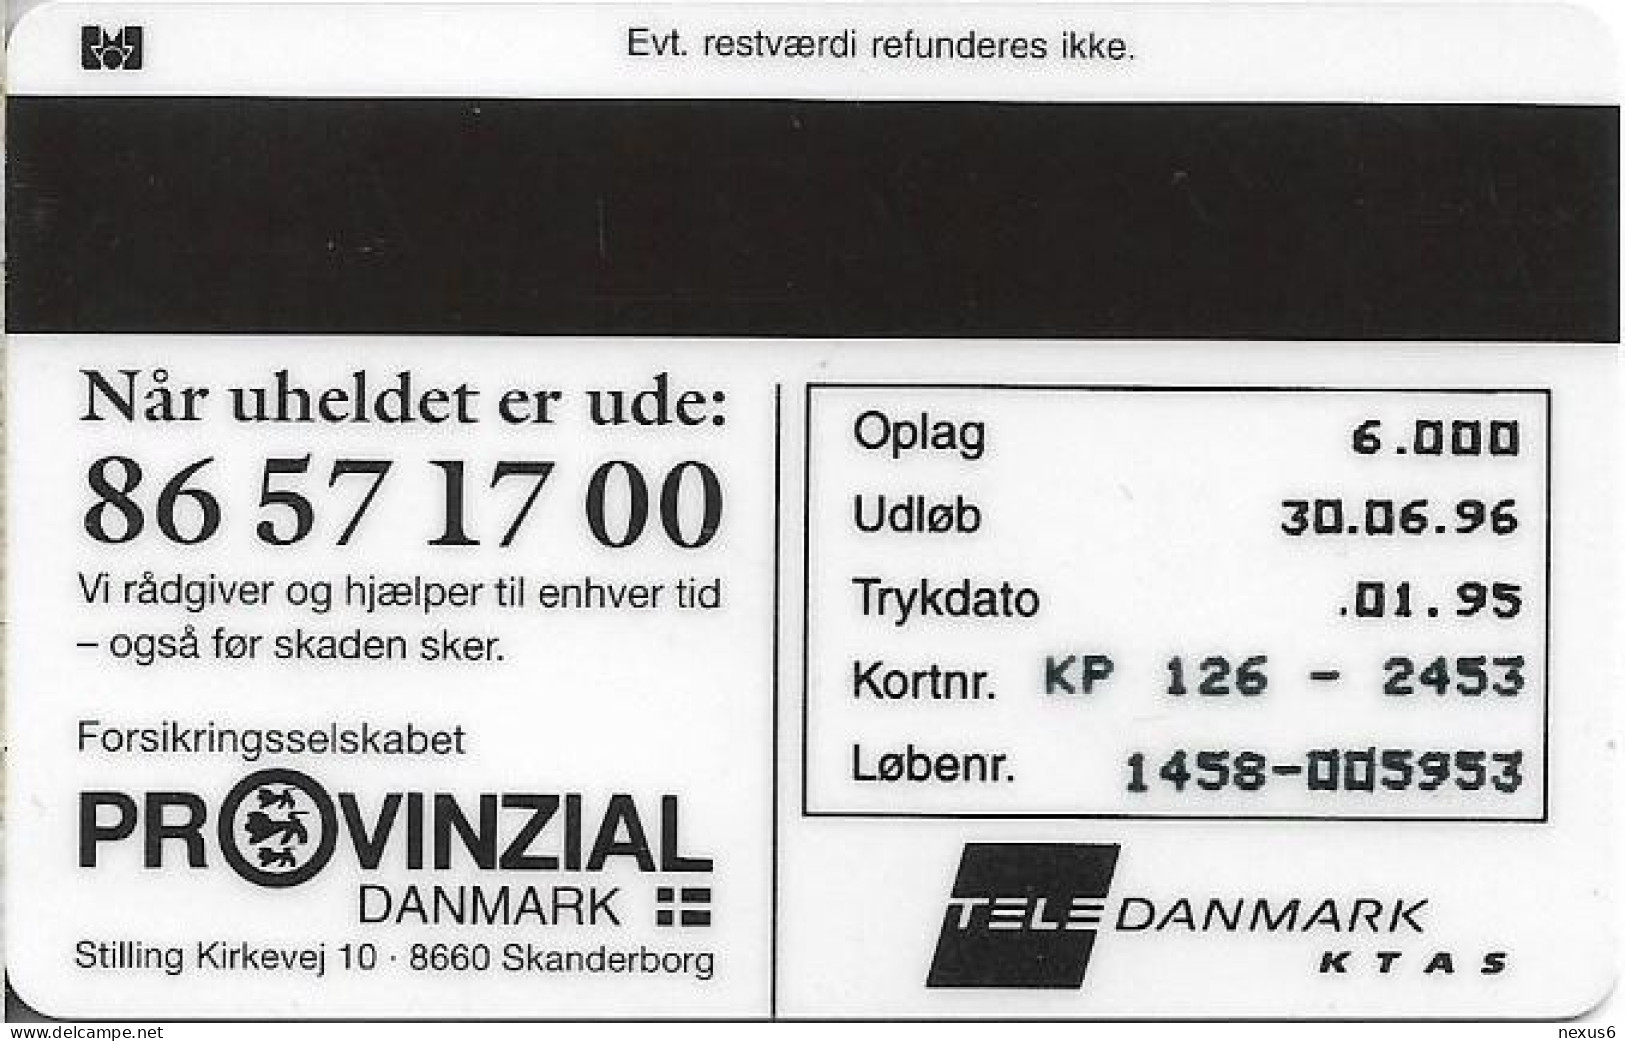 Denmark - KTAS - Kort Til Hjaelp - TDKP126A - 01.1995, 10kr, 6.000ex, Used - Denemarken